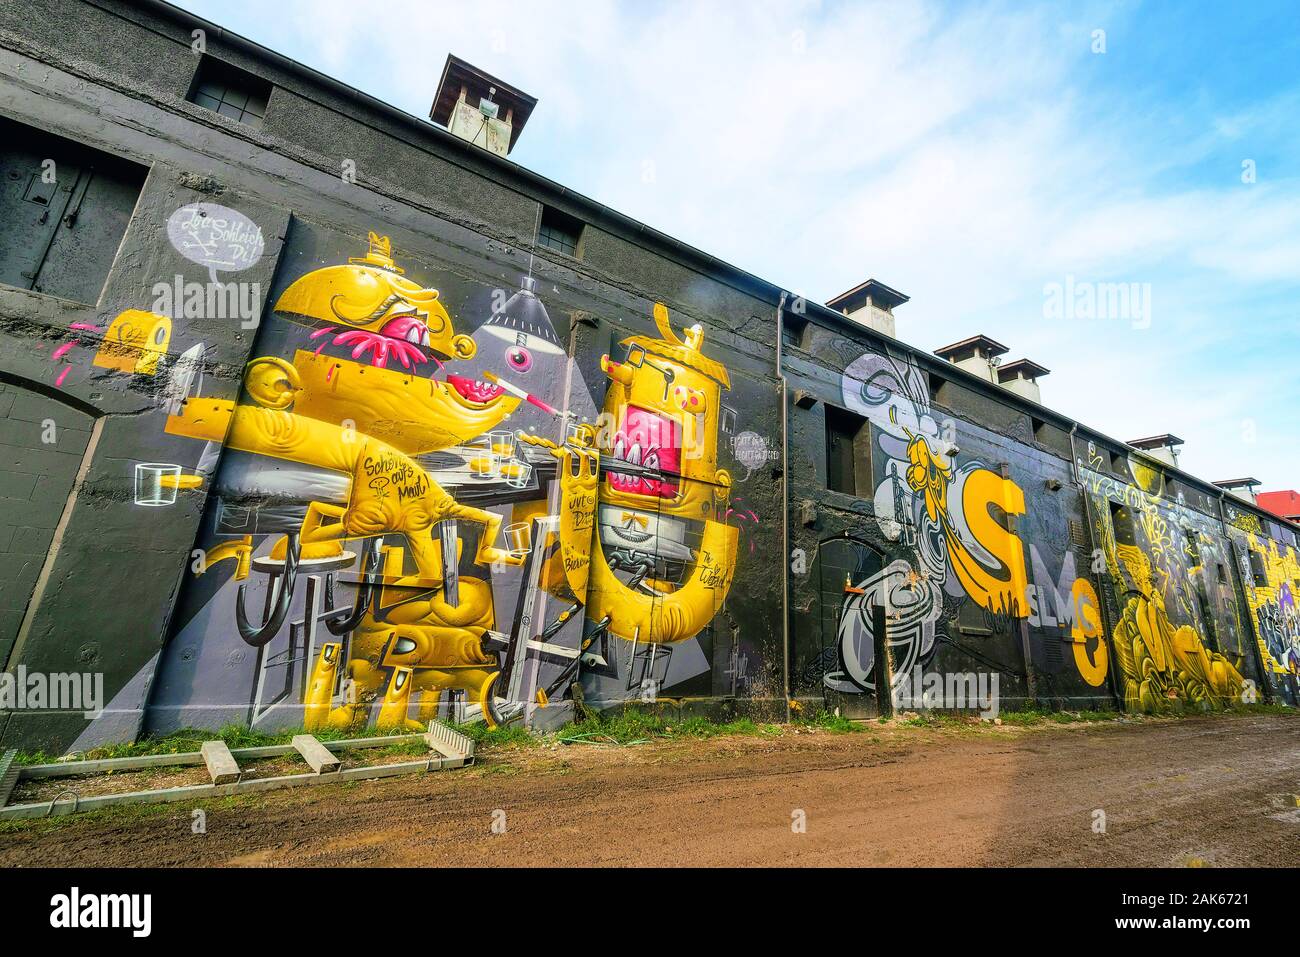 Stadtteil Thalkirchen : Graffiti im Viehhof, Muenchen | utilisée dans le monde entier Banque D'Images